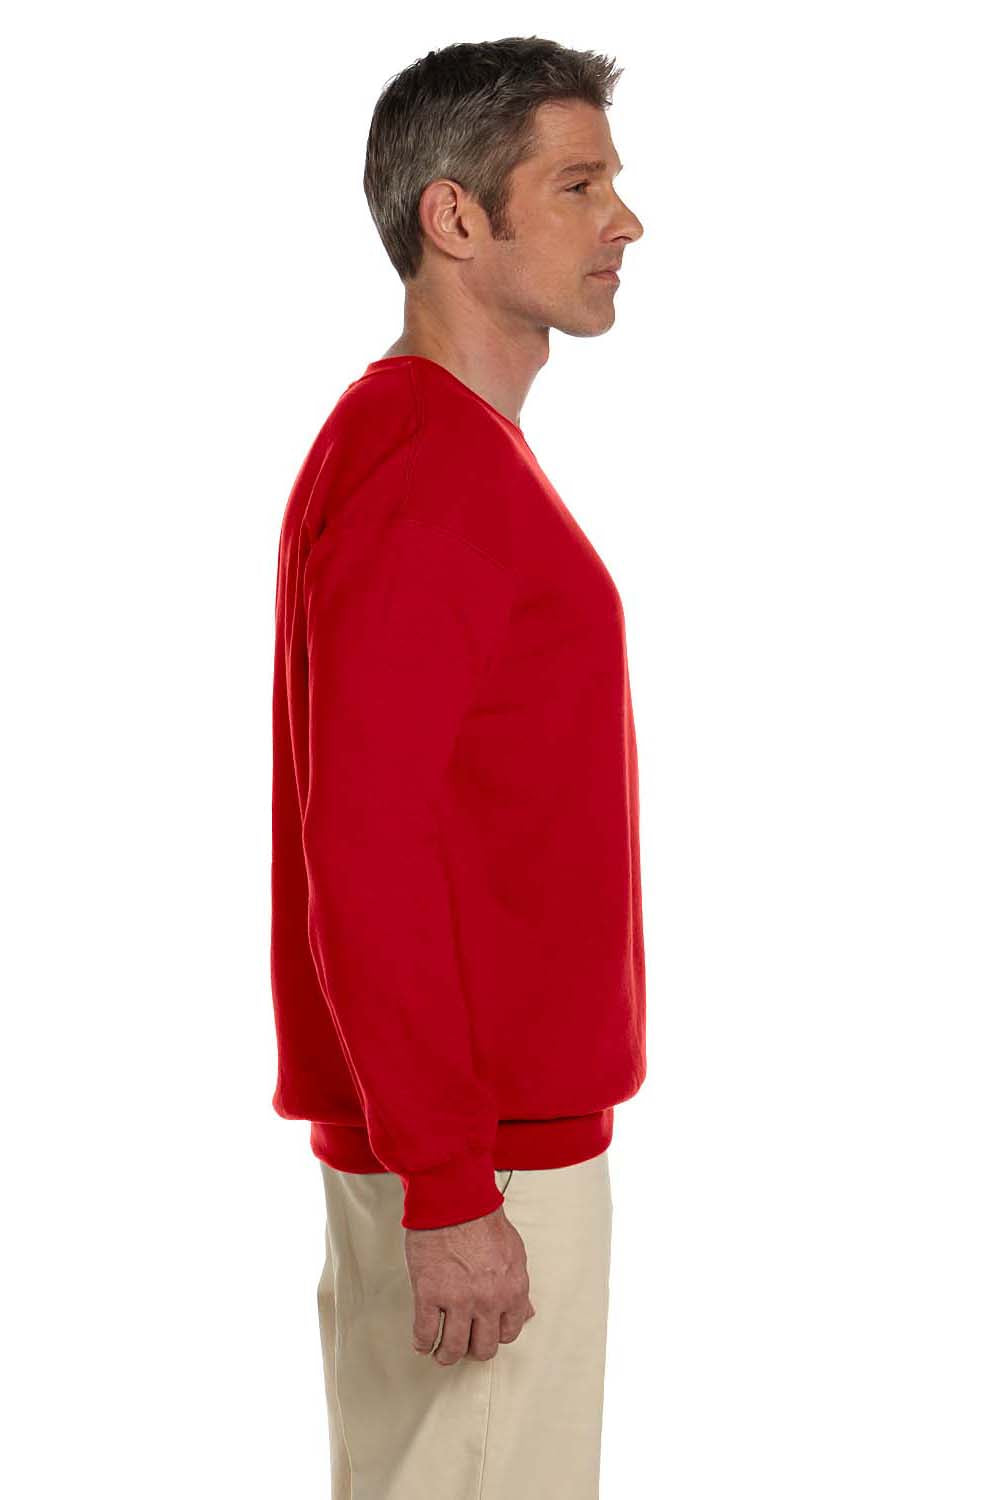 Gildan G180 Mens Fleece Crewneck Sweatshirt Cherry Red Side